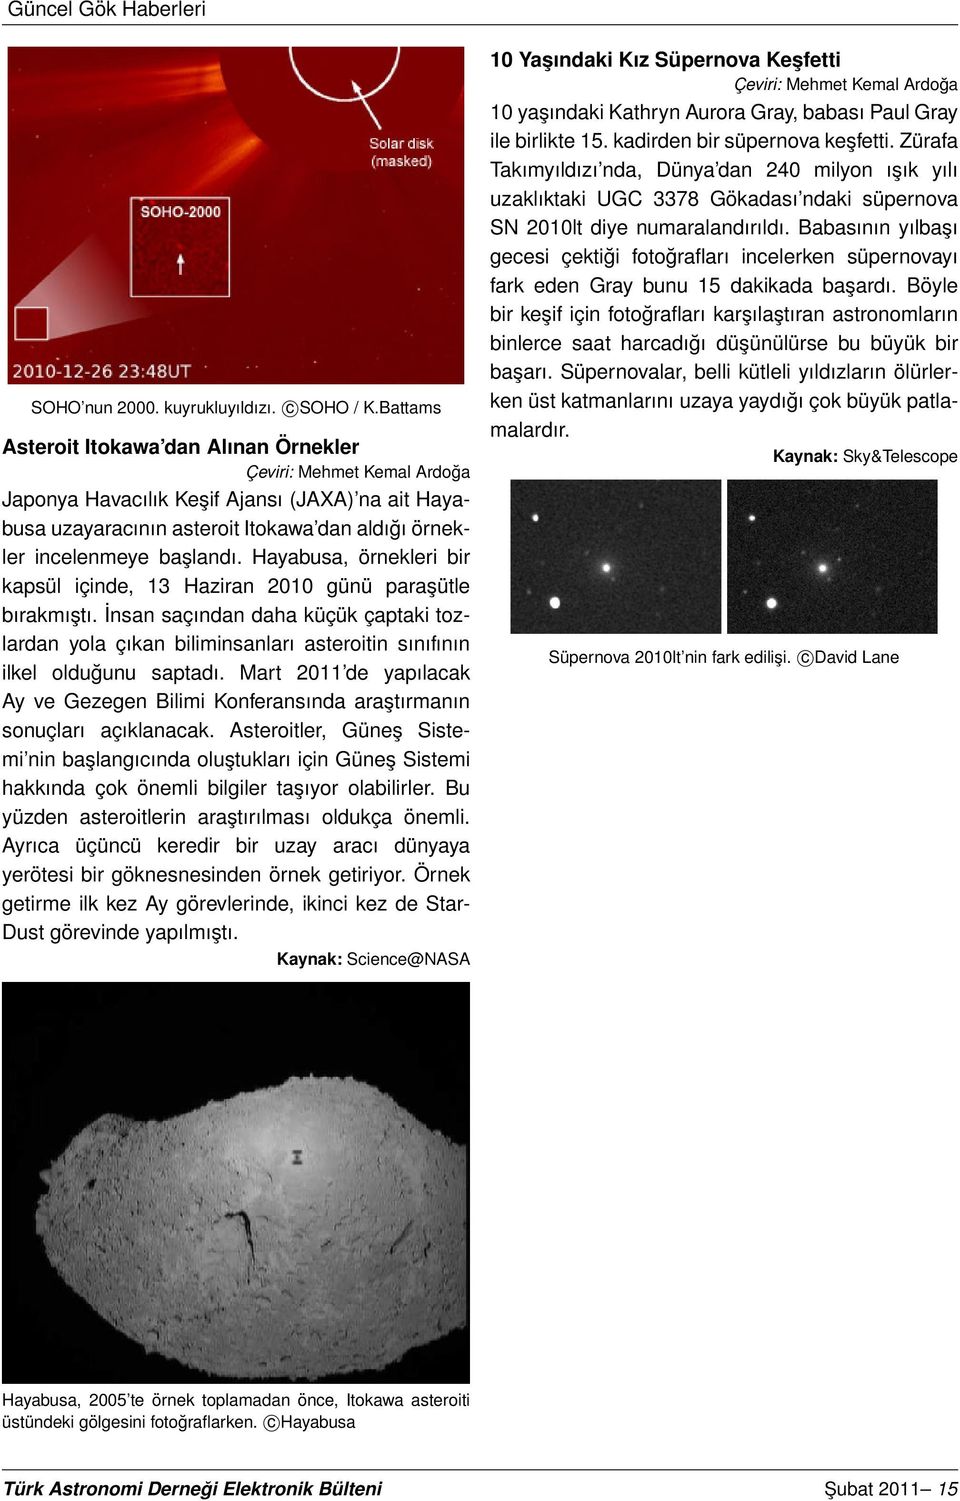 Hayabusa, örnekleri bir kapsül içinde, 13 Haziran 2010 günü paraşütle bırakmıştı. İnsan saçından daha küçük çaptaki tozlardan yola çıkan biliminsanları asteroitin sınıfının ilkel olduğunu saptadı.